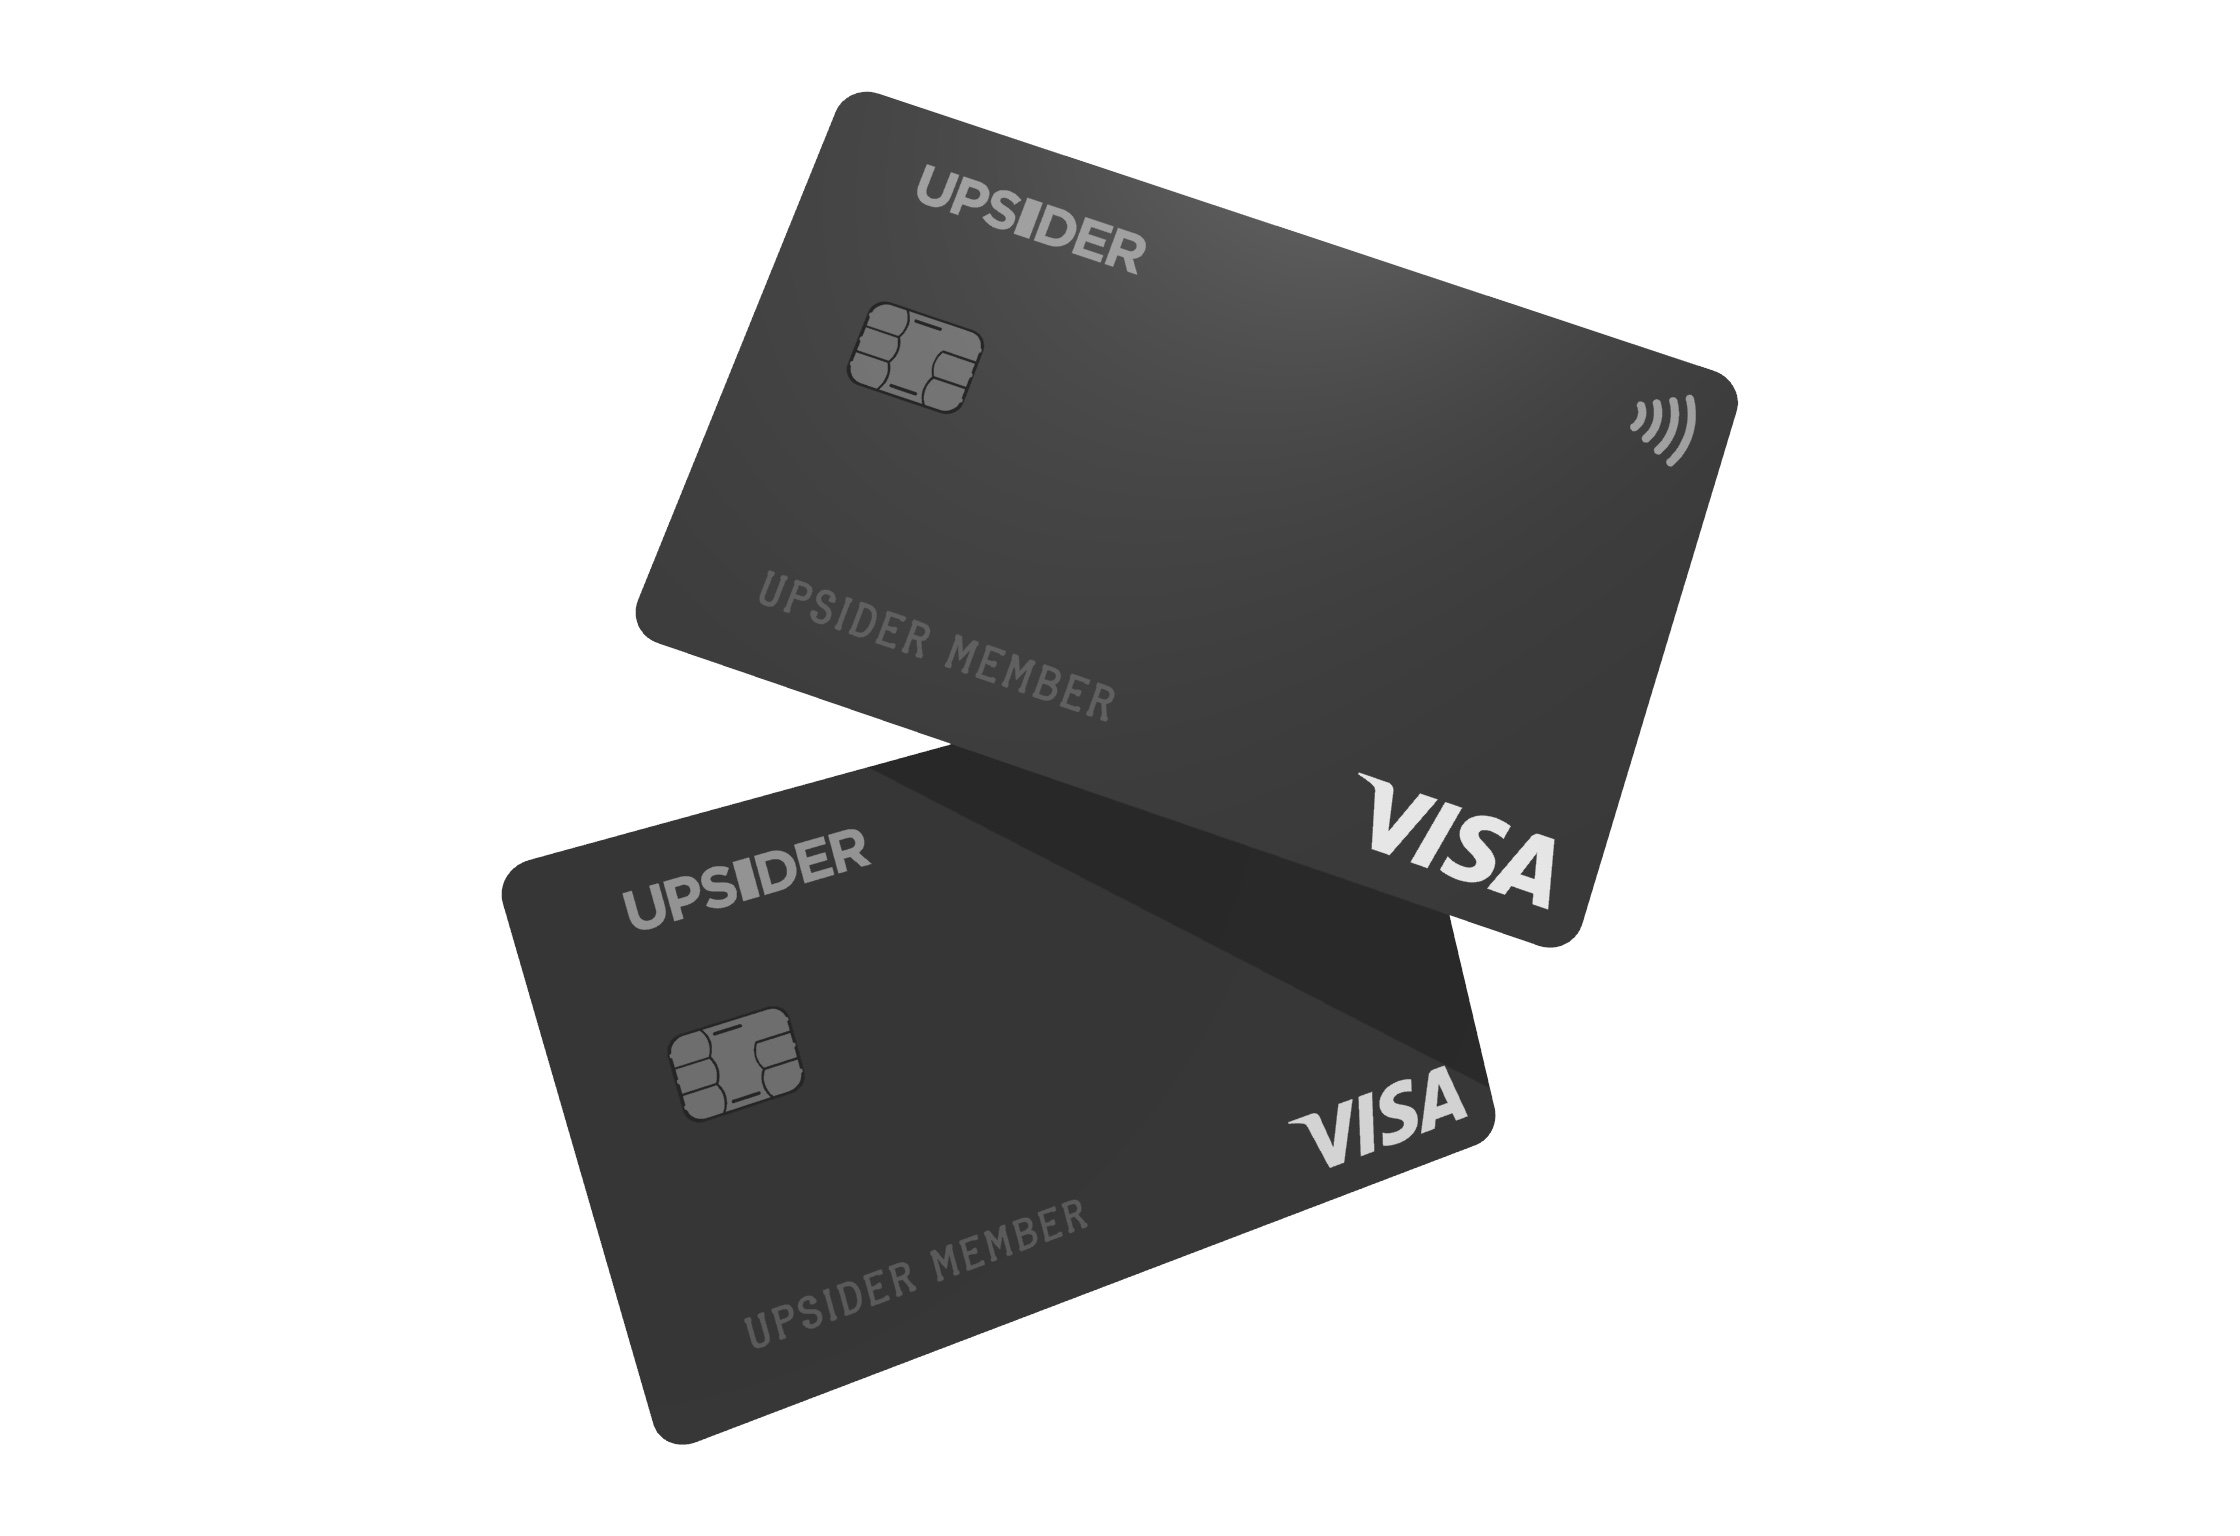 UPSIDERでは数百社に対して法人カードを軸とした金融サービスを提供している
